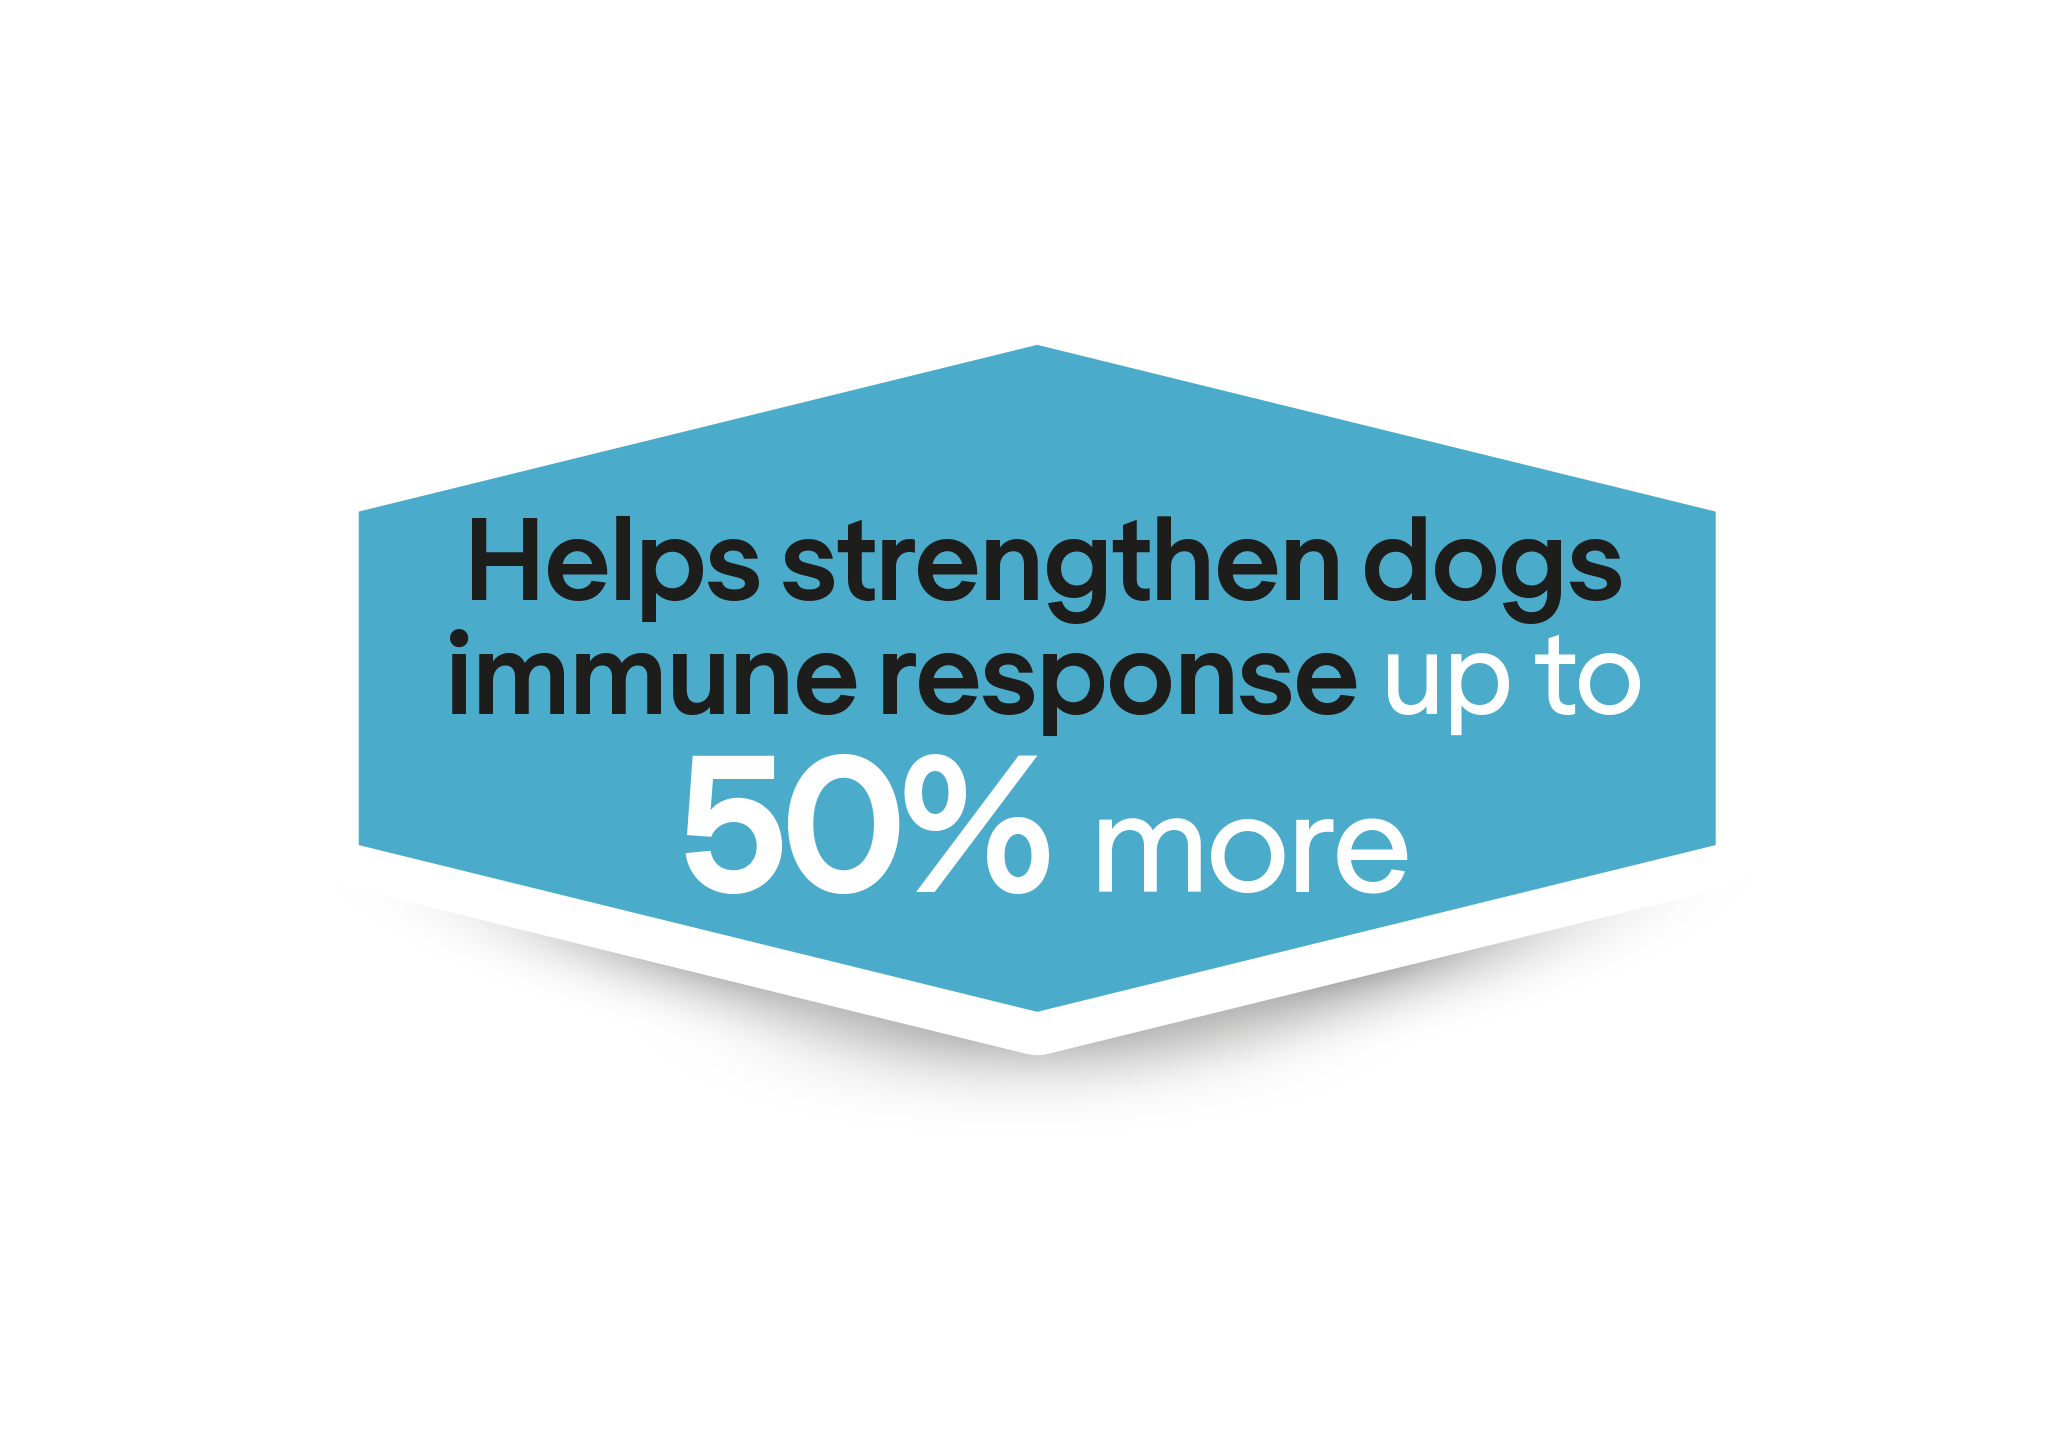  Ayuda a reforzar la respuesta inmunitaria de los cachorros hasta un 50% más